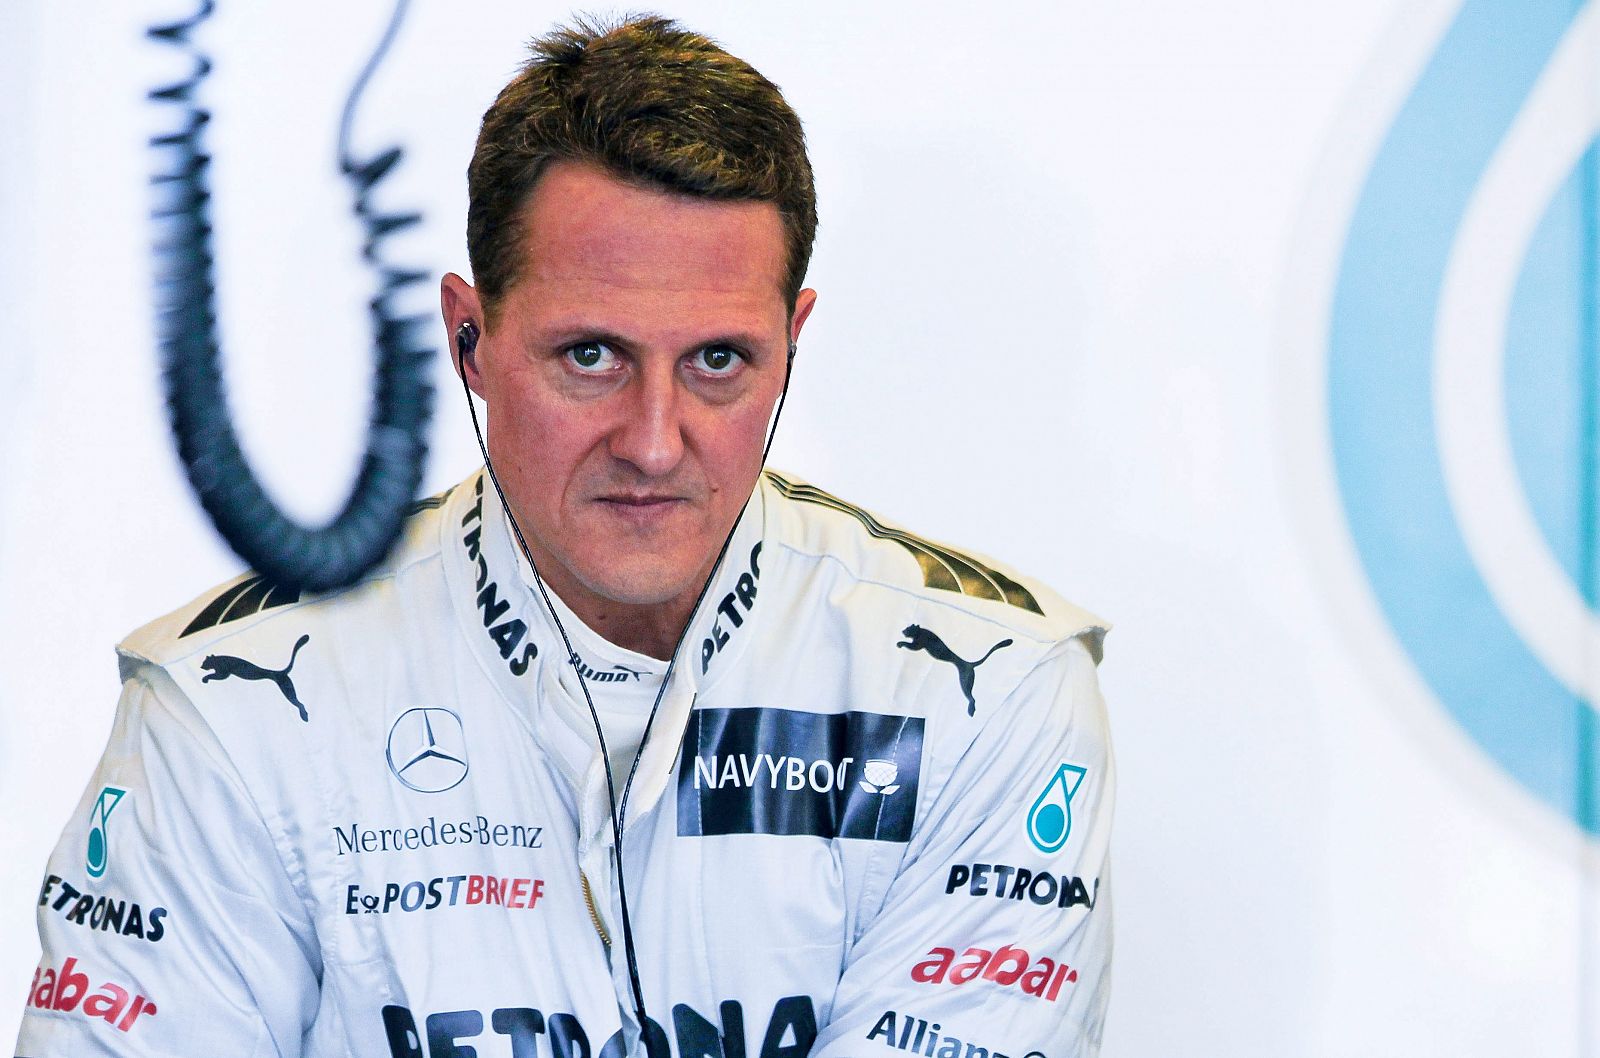 Fotografía de archivo tomada el 17 de marzo de 2012 que muestra al piloto alemán de Fórmula Uno, Michael Schumacher en el circuito Albert Park.